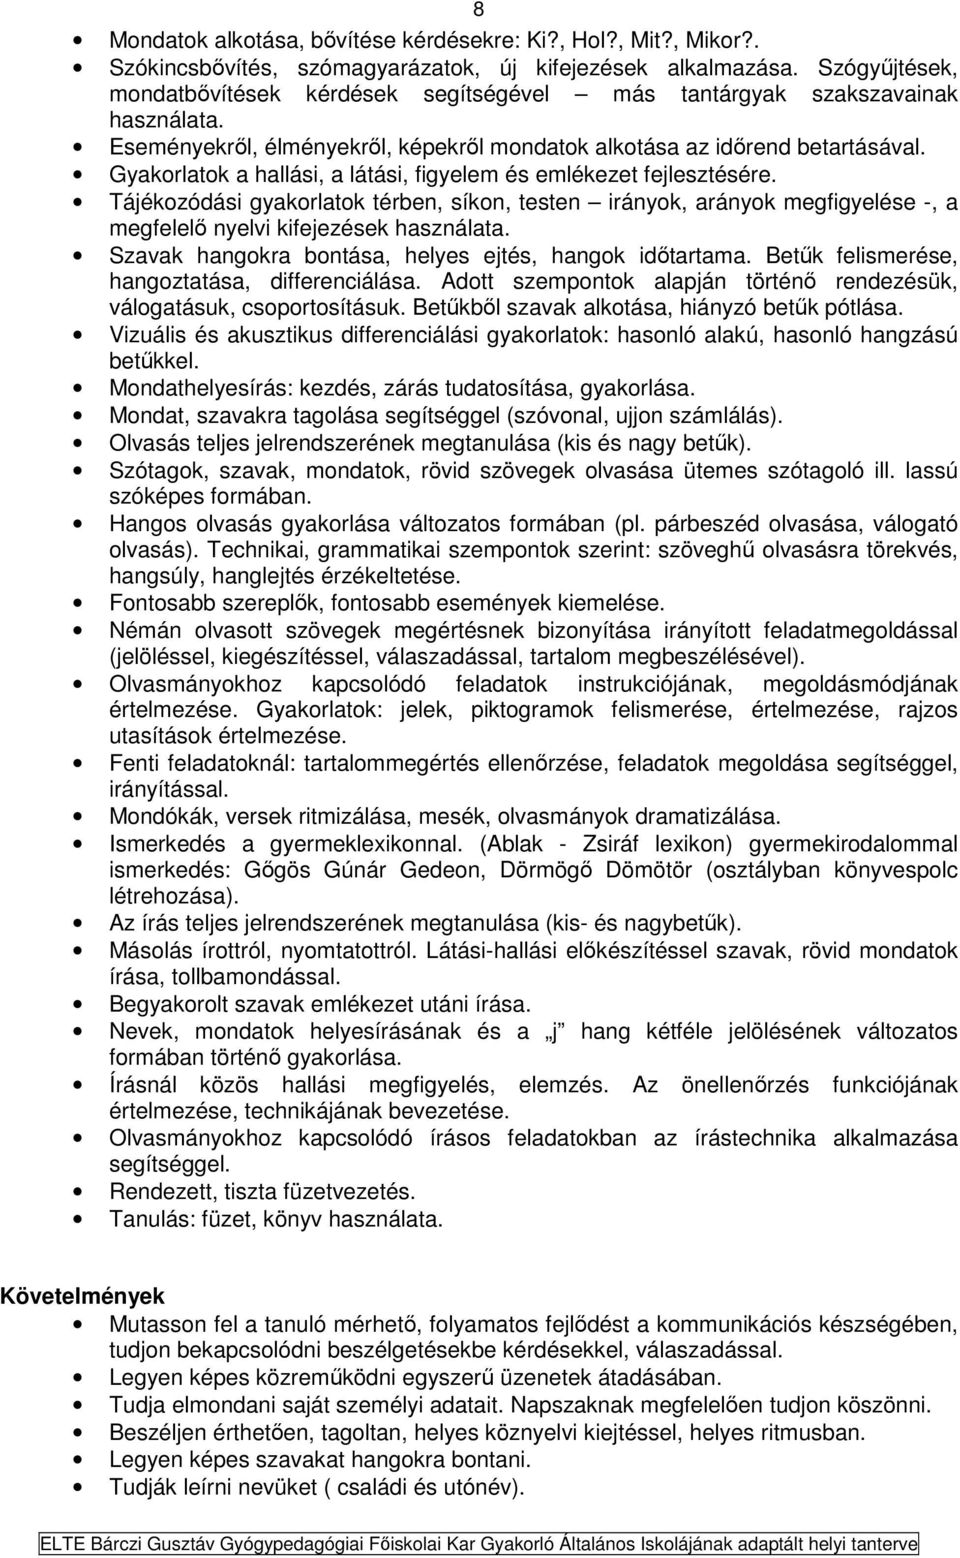 ELTE Bárczi Gusztáv Gyógypedagógiai Főiskolai Kar Gyakorló Általános  Iskolájának adaptált helyi tanterve - PDF Ingyenes letöltés